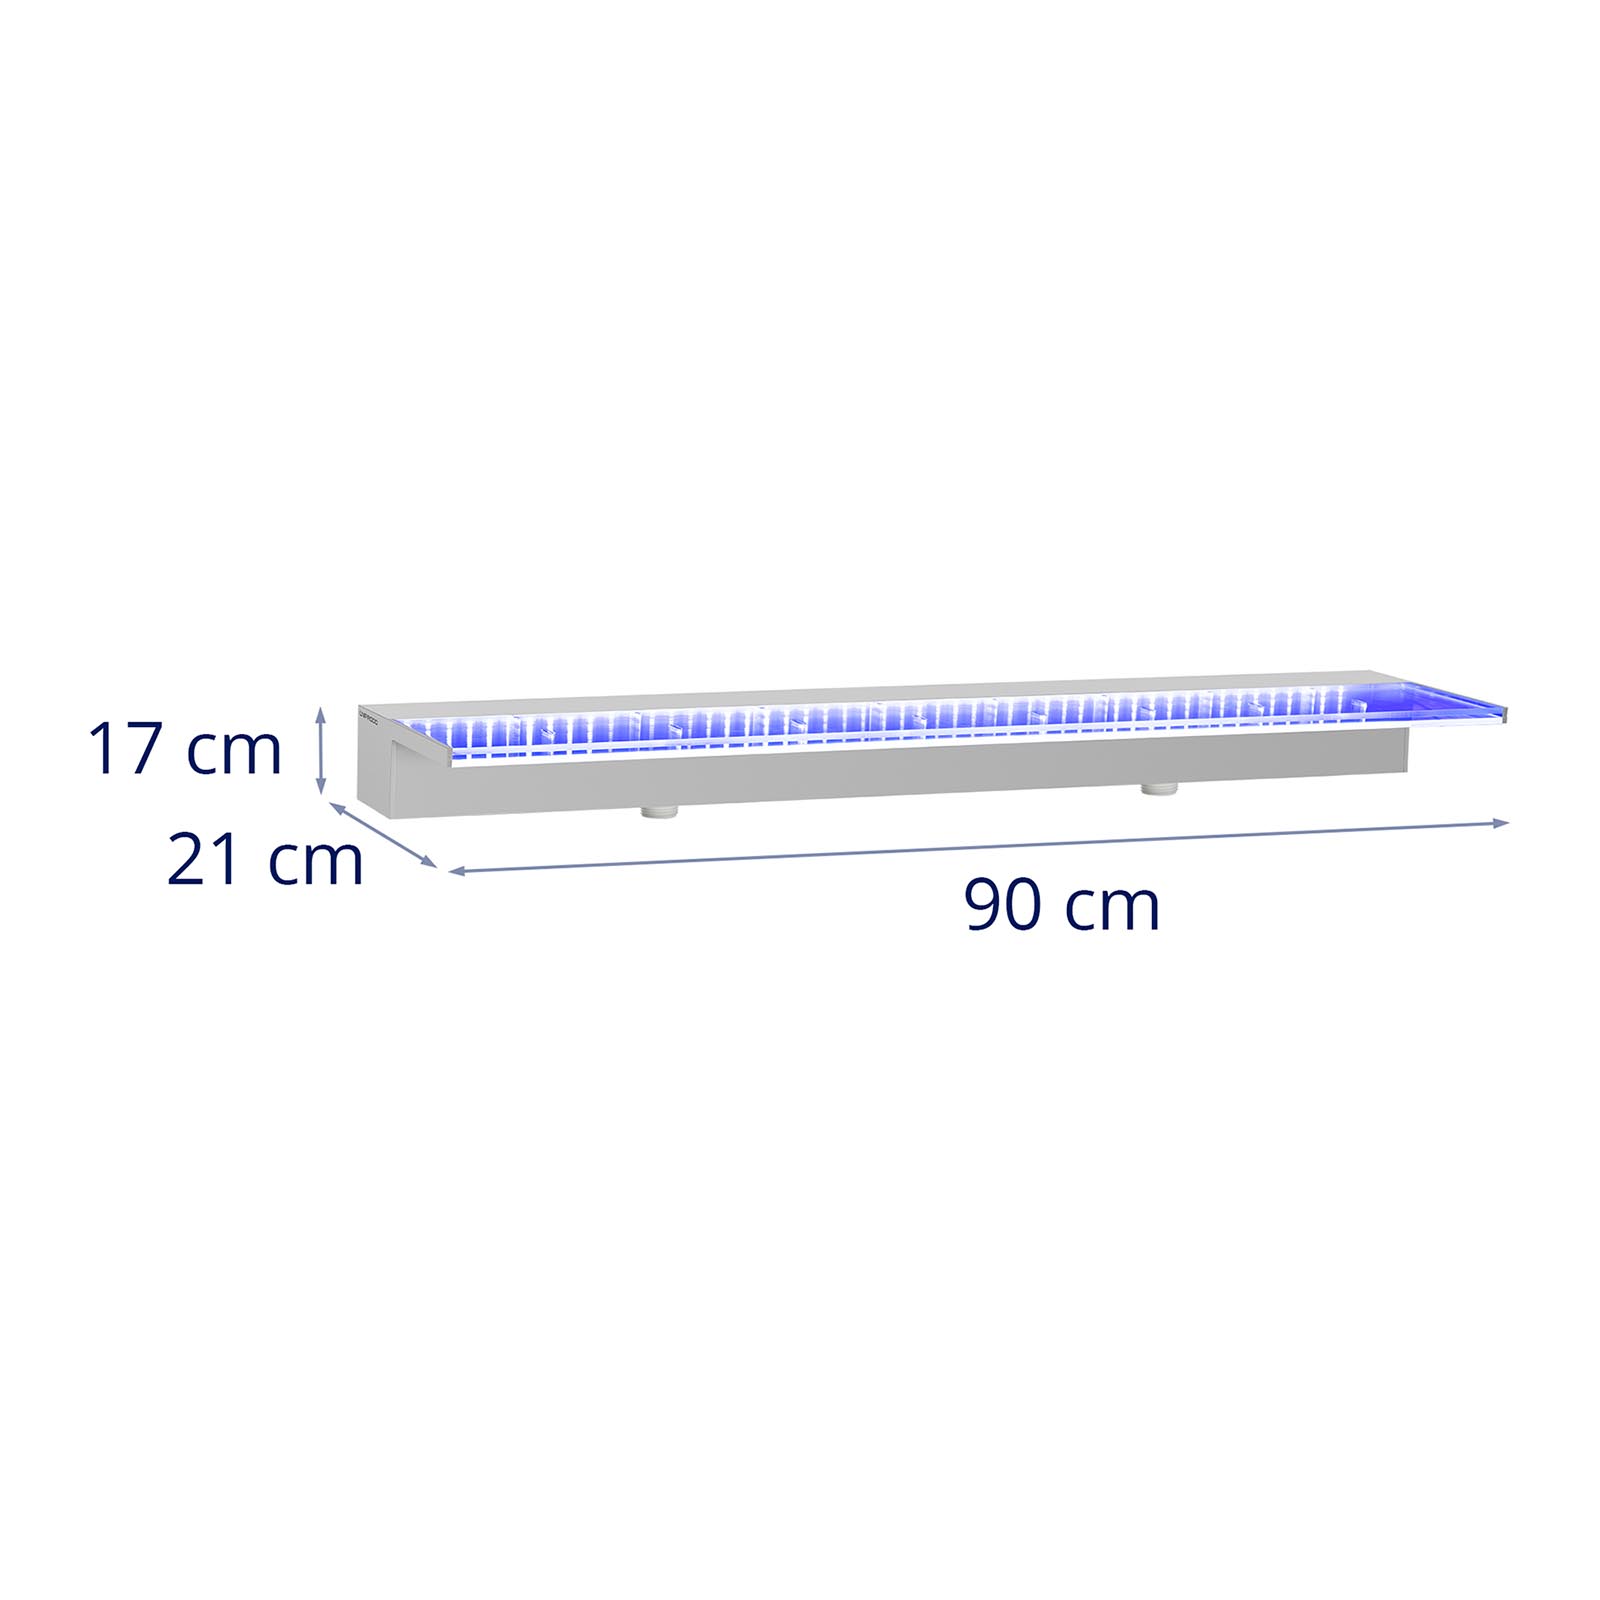 Medence szökőkút - 90 cm magas - LED világítás - kék - mély vízkifolyó